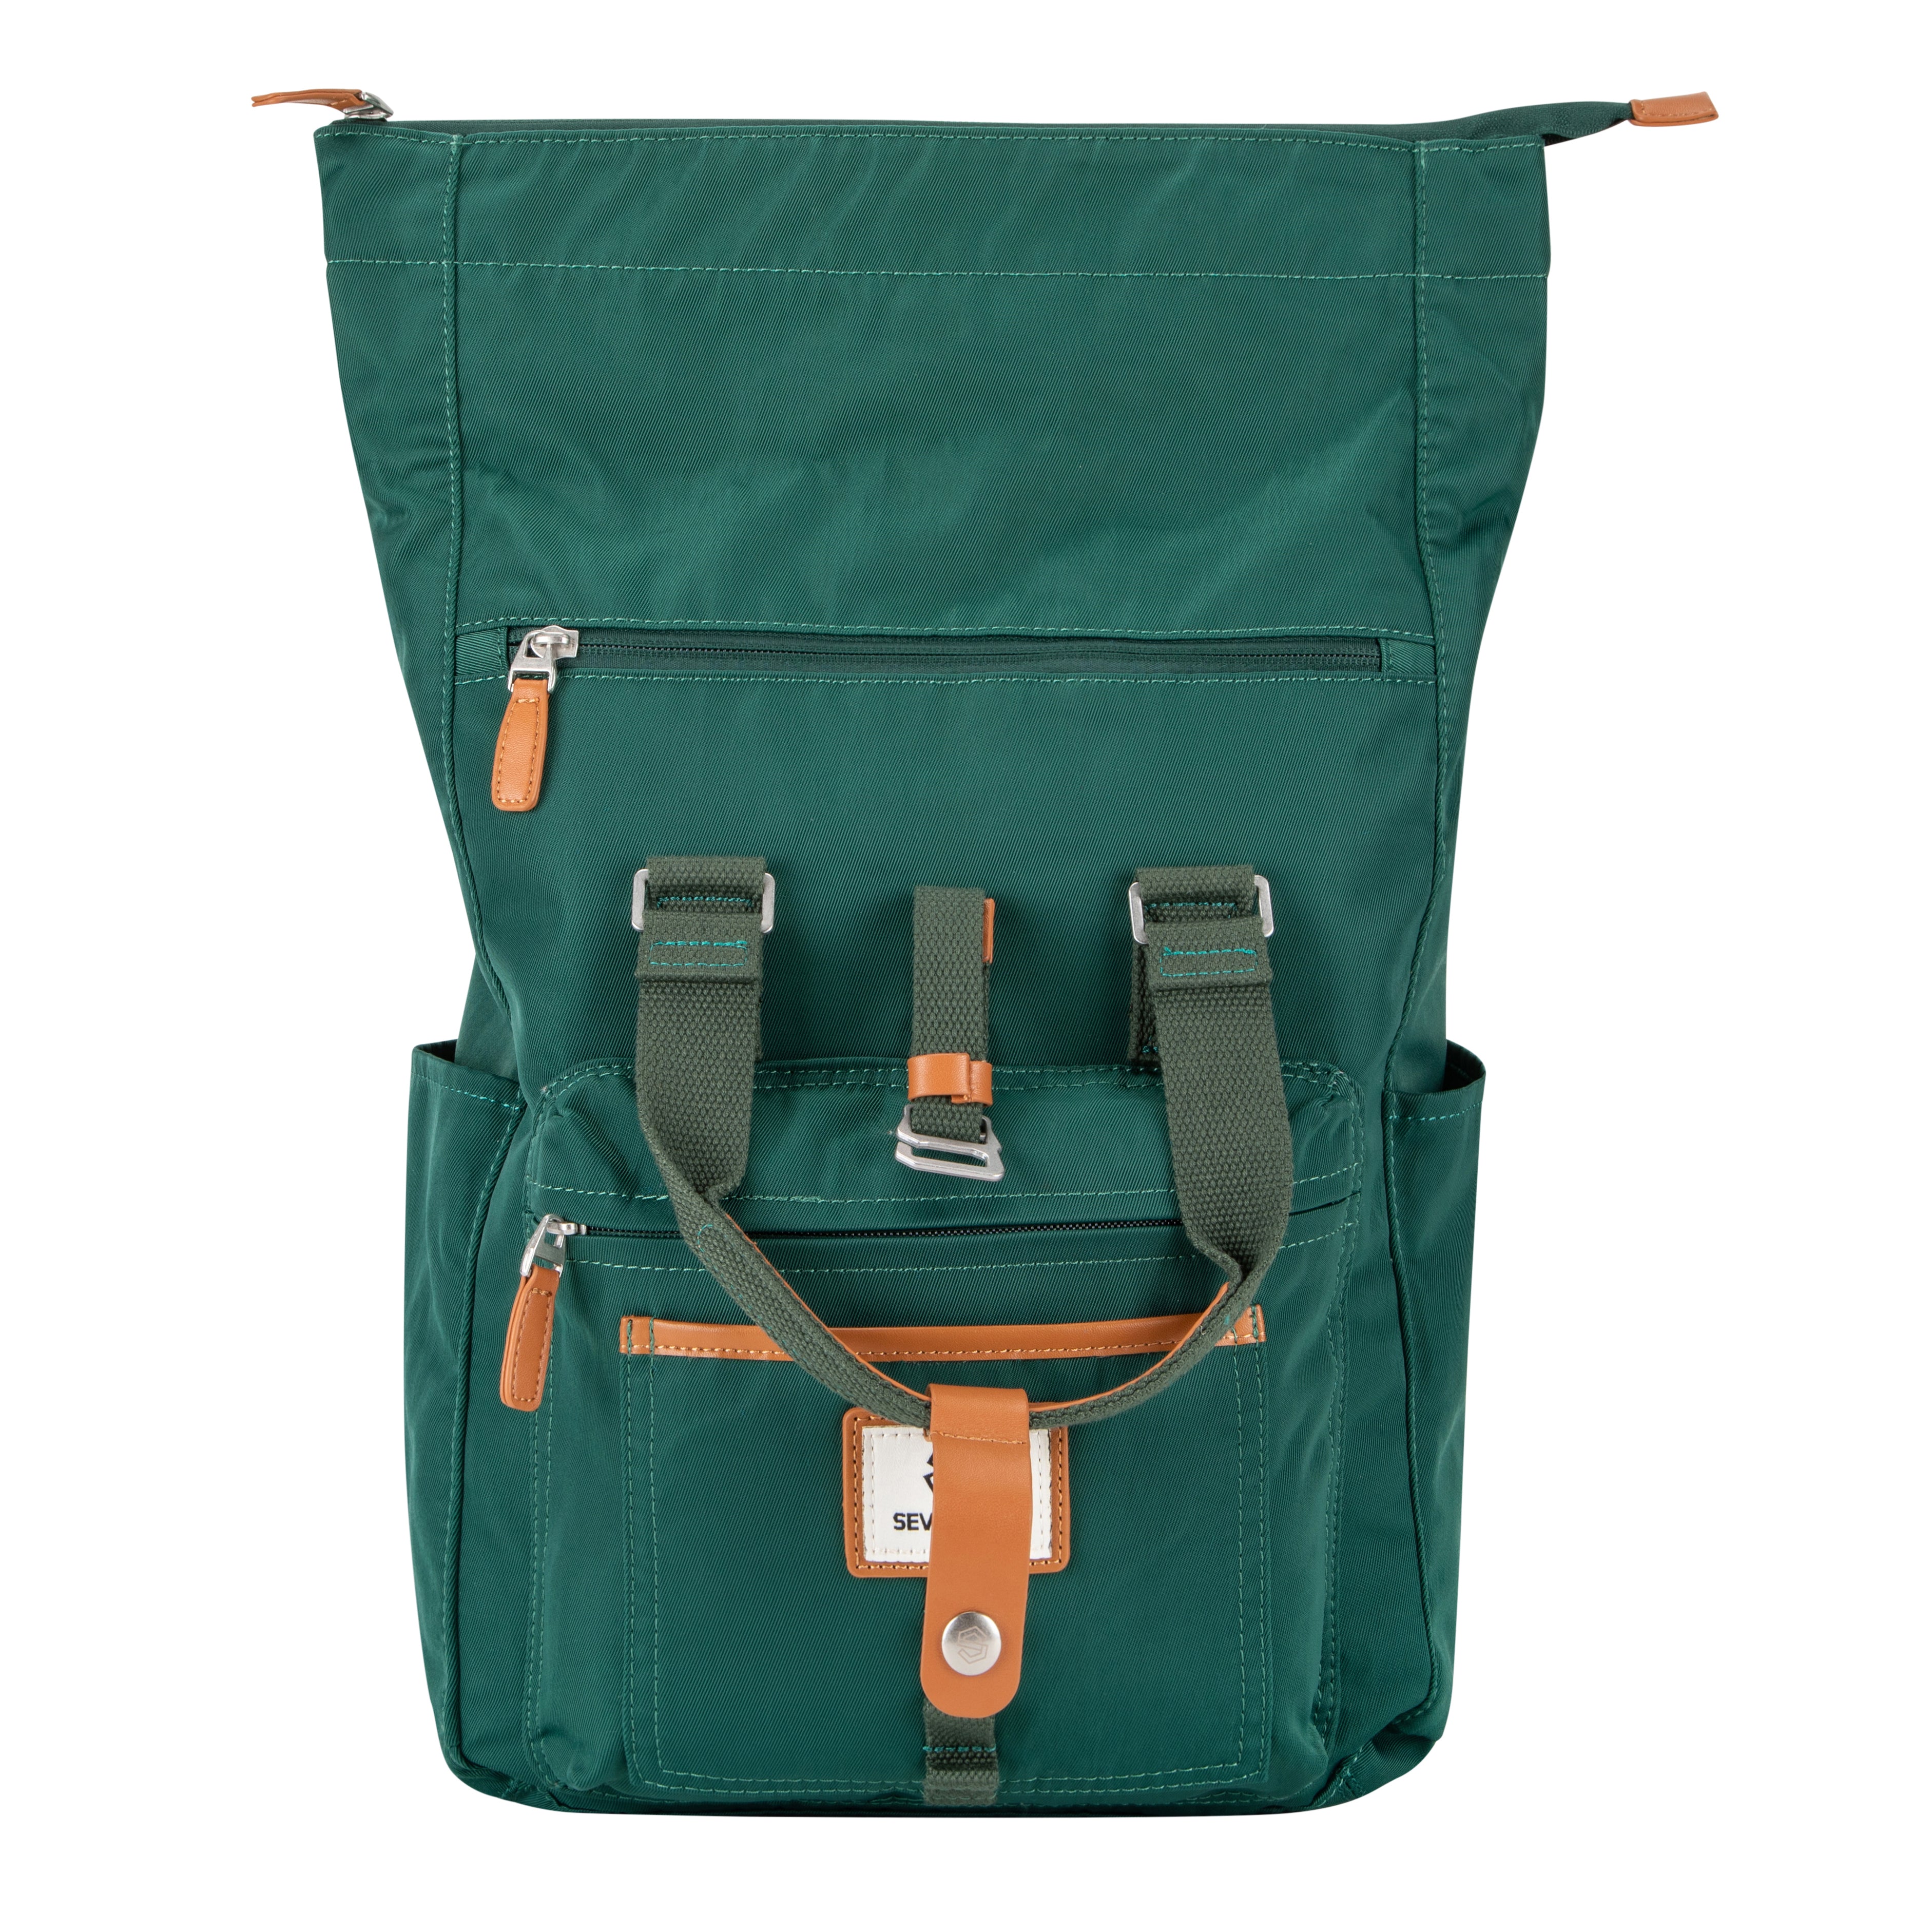 Canary Wharf Backpack - Emerald Green